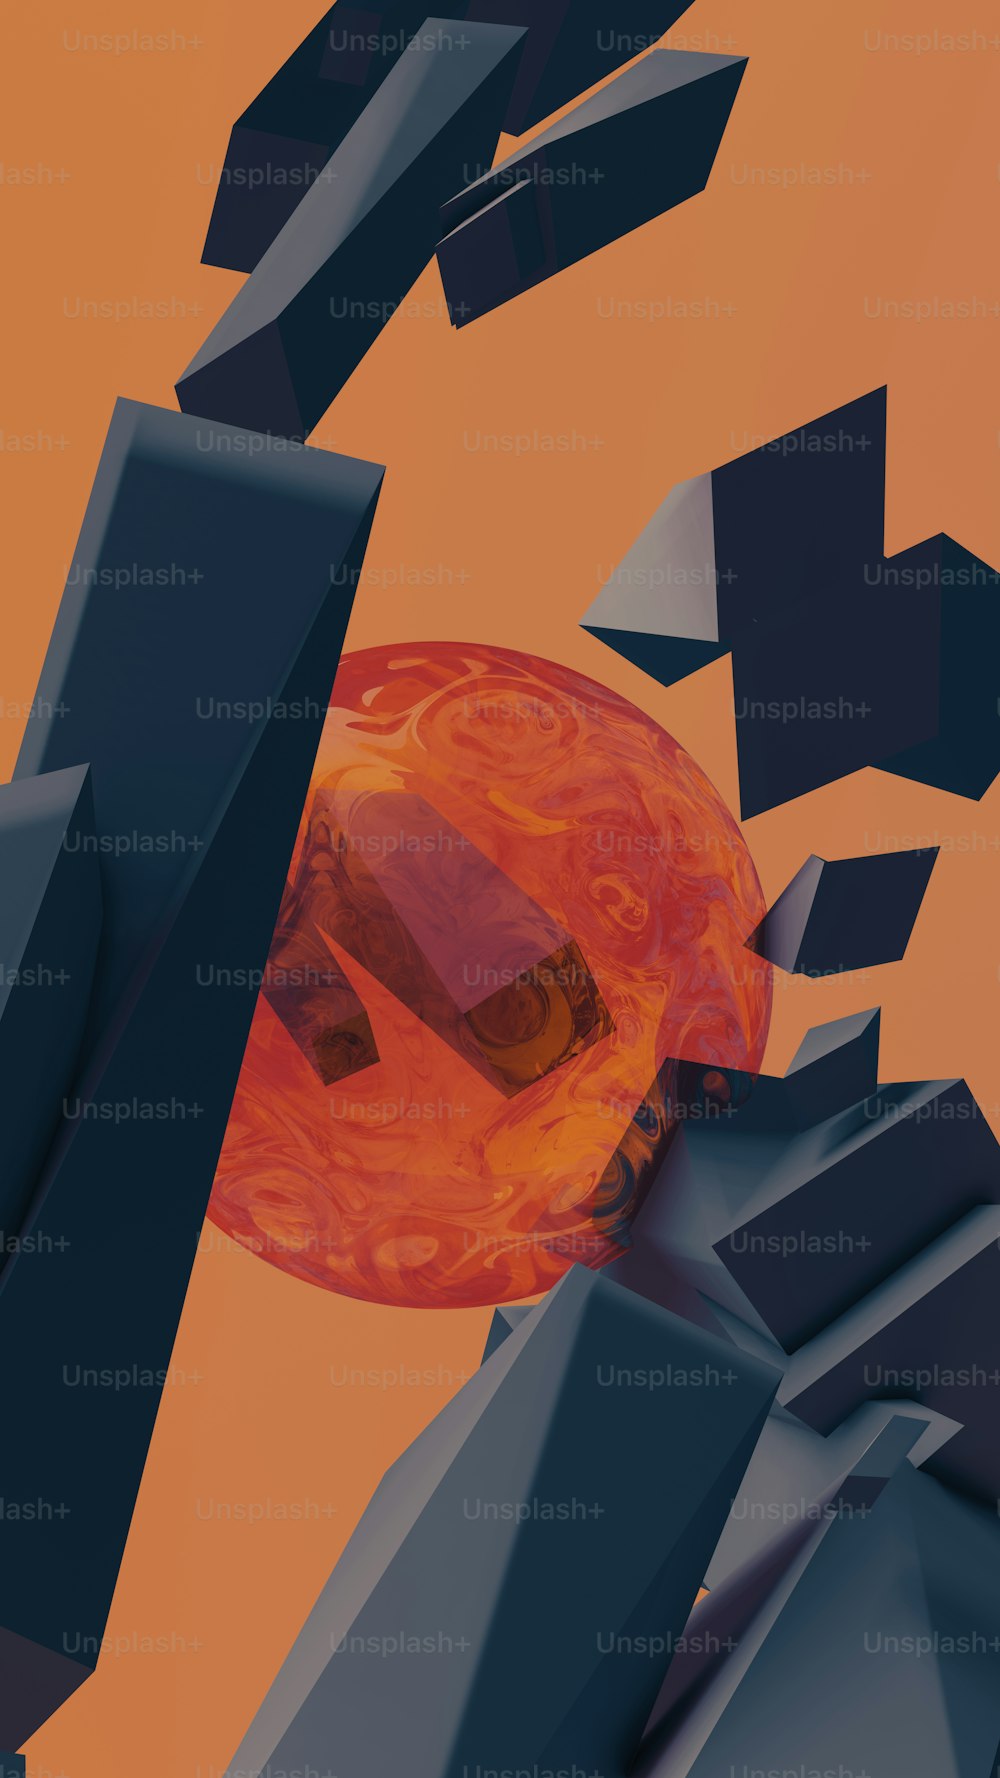 Una imagen generada por computadora de un objeto naranja y negro